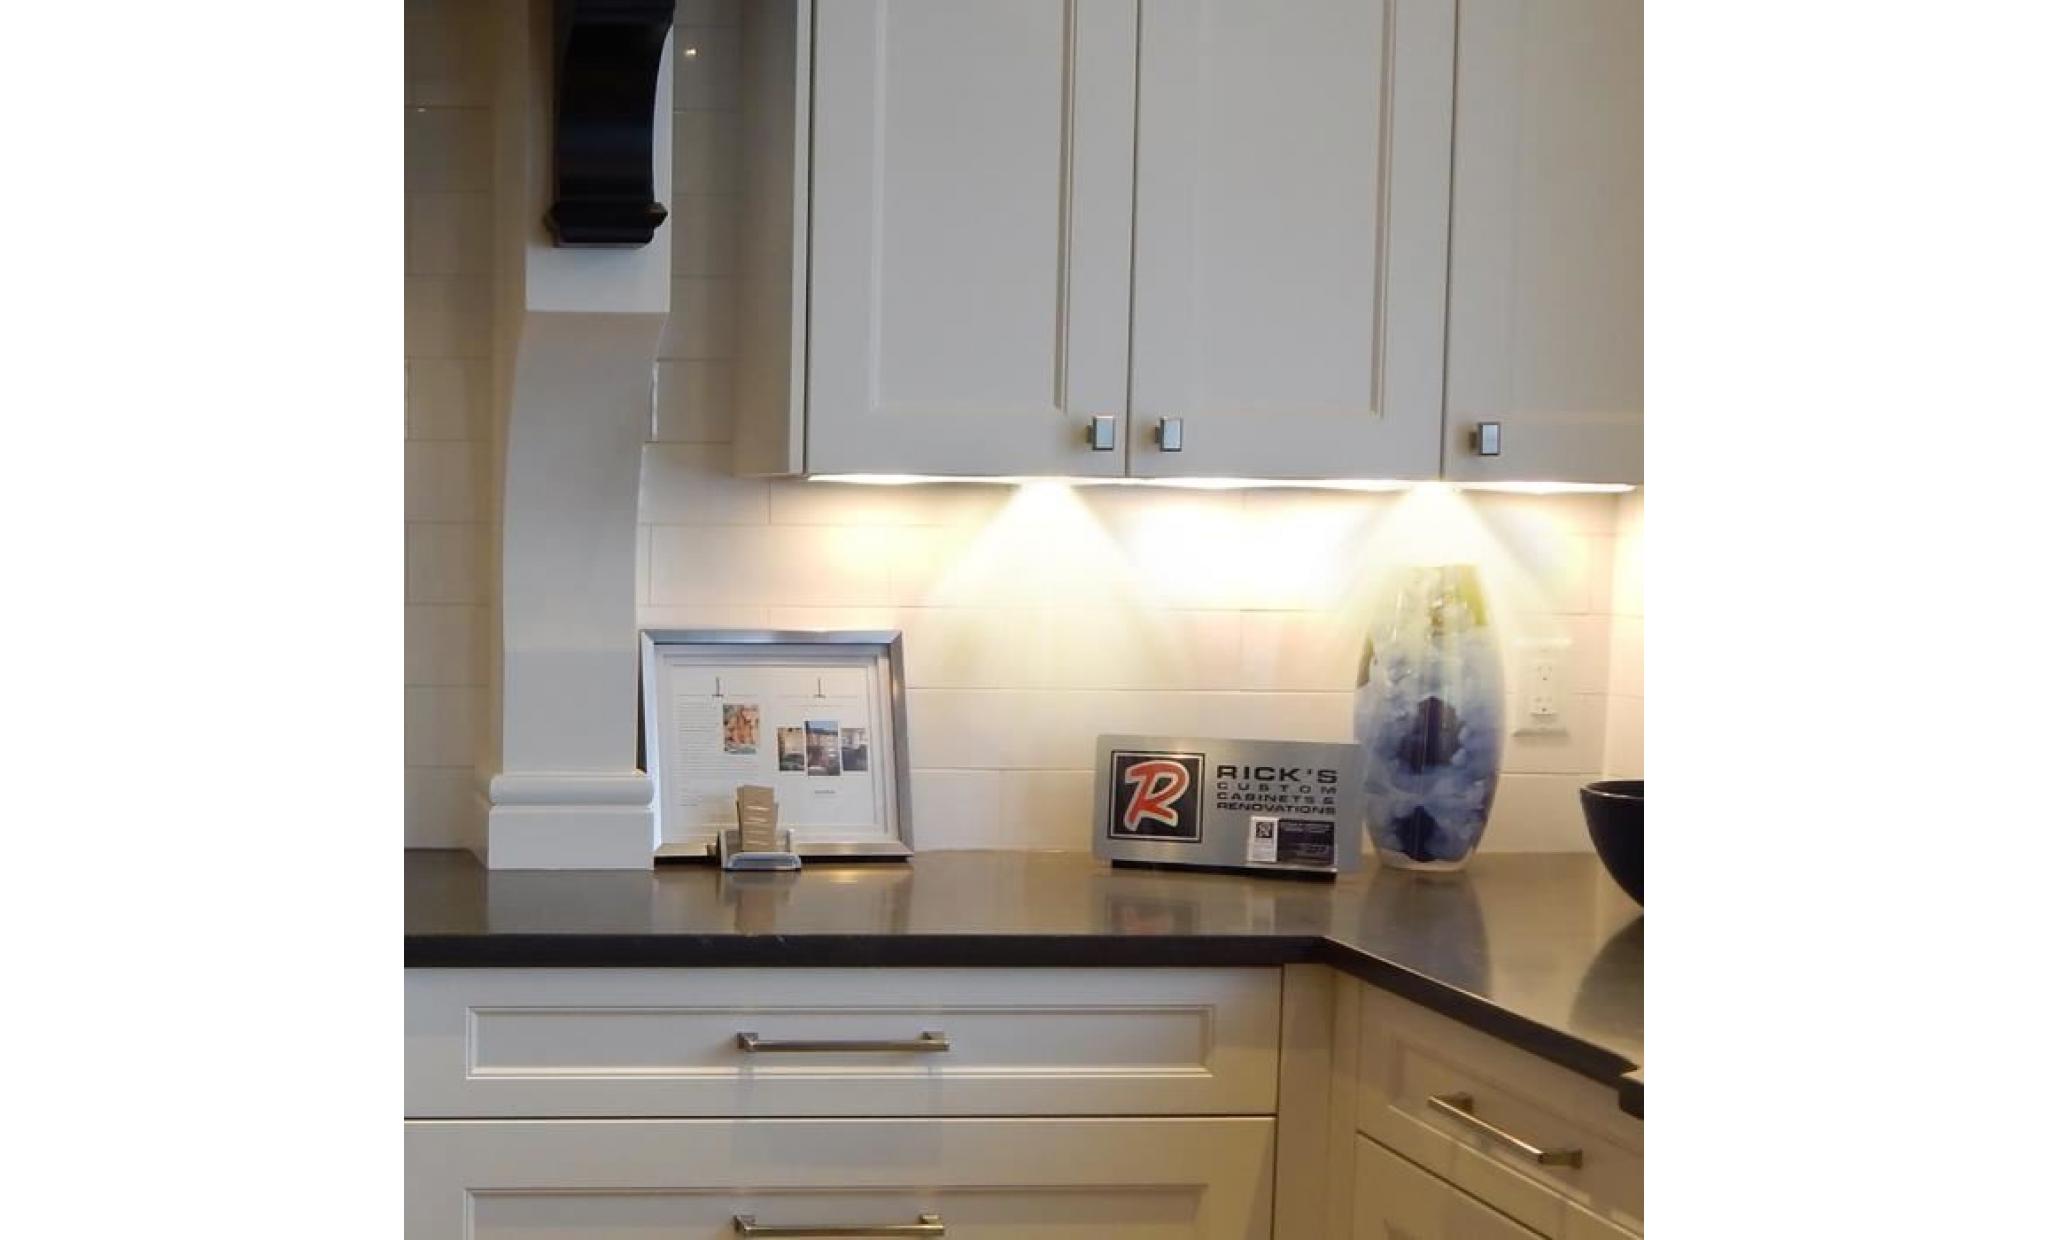 4 pcs lampes led sous cabinet eclairage encastré pour armoires placards mur salle de bains cuisine blanc chaud pas cher